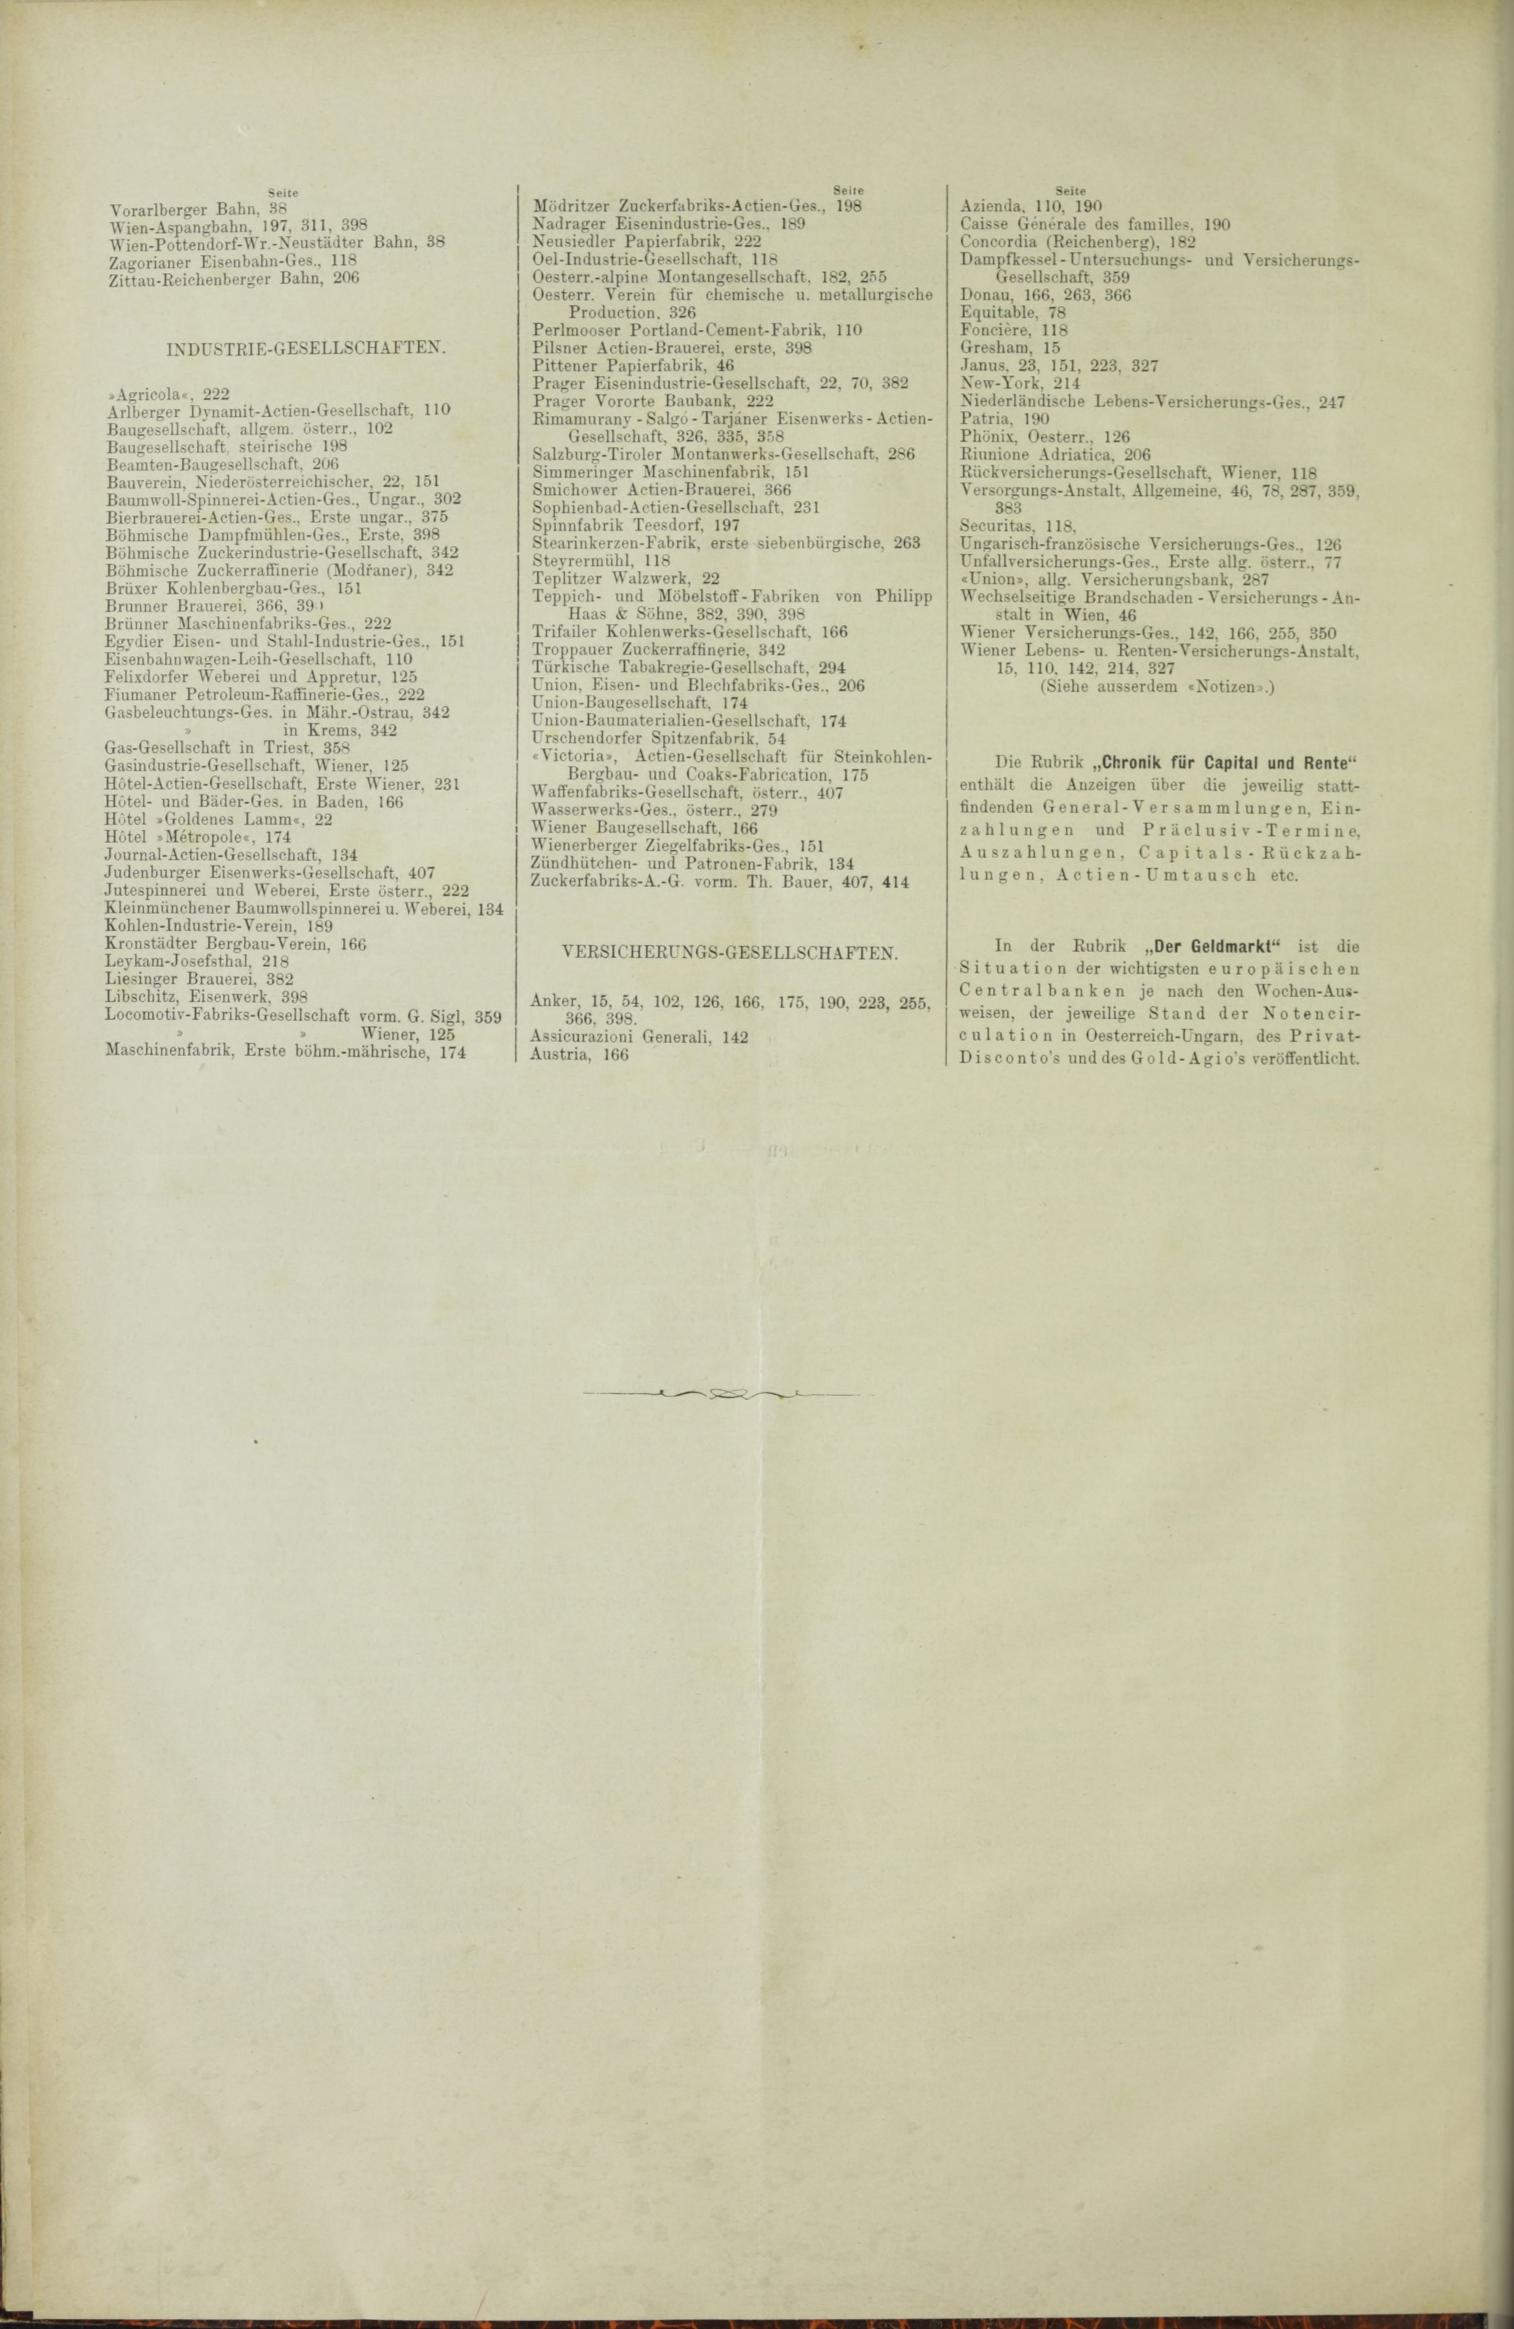 Der Tresor 04.03.1886 - Seite 12